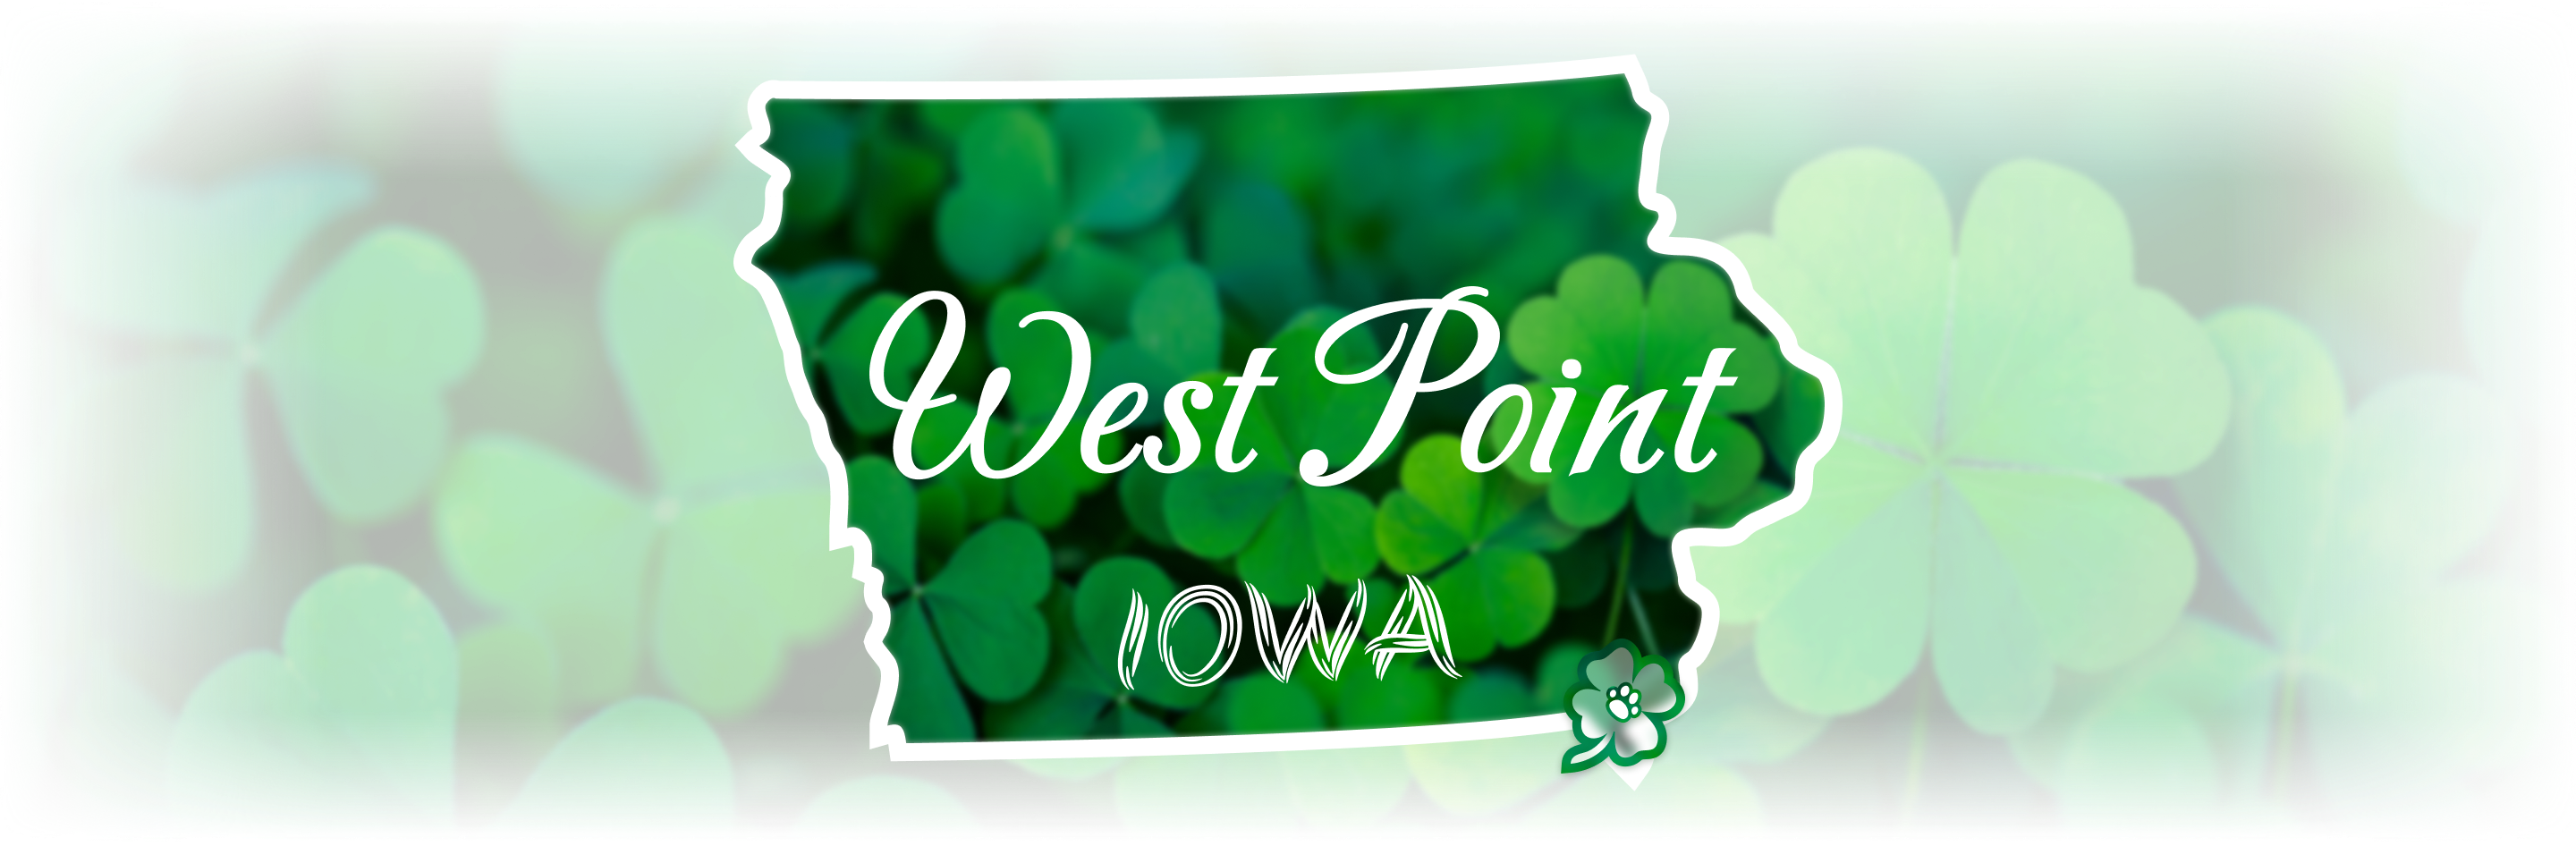 West Point, Iowa.